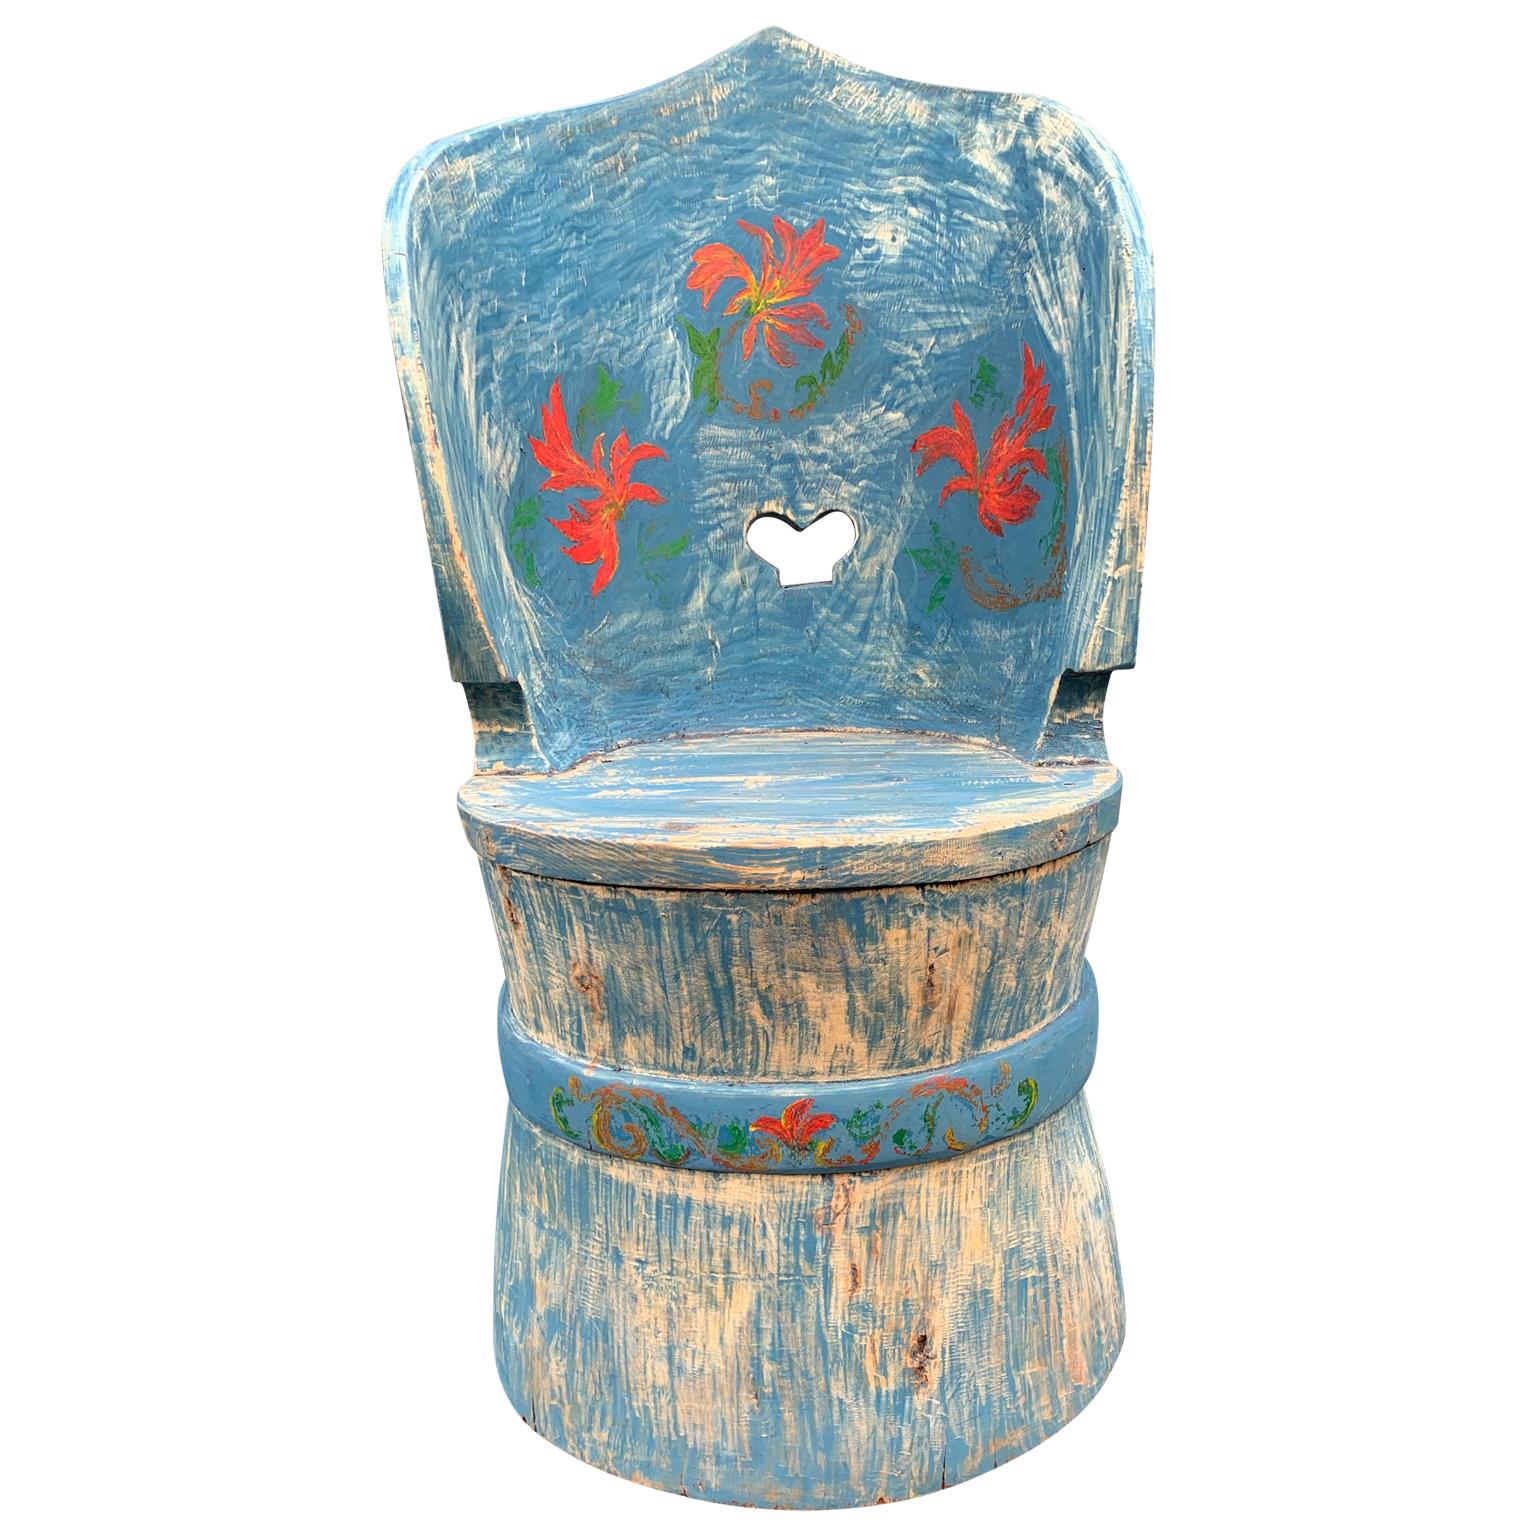 Folk Art Kubbstol Stuhl aus Nordschweden. Ein Kubbstol-Stuhl wird aus einem ausgehöhlten Baumstamm hergestellt; aus einem einzigen Stück Holz, das herausgesägt wurde, um Sitz, Rückenlehne und Rahmen zu formen. Die Konstruktion ist rustikal mit einem